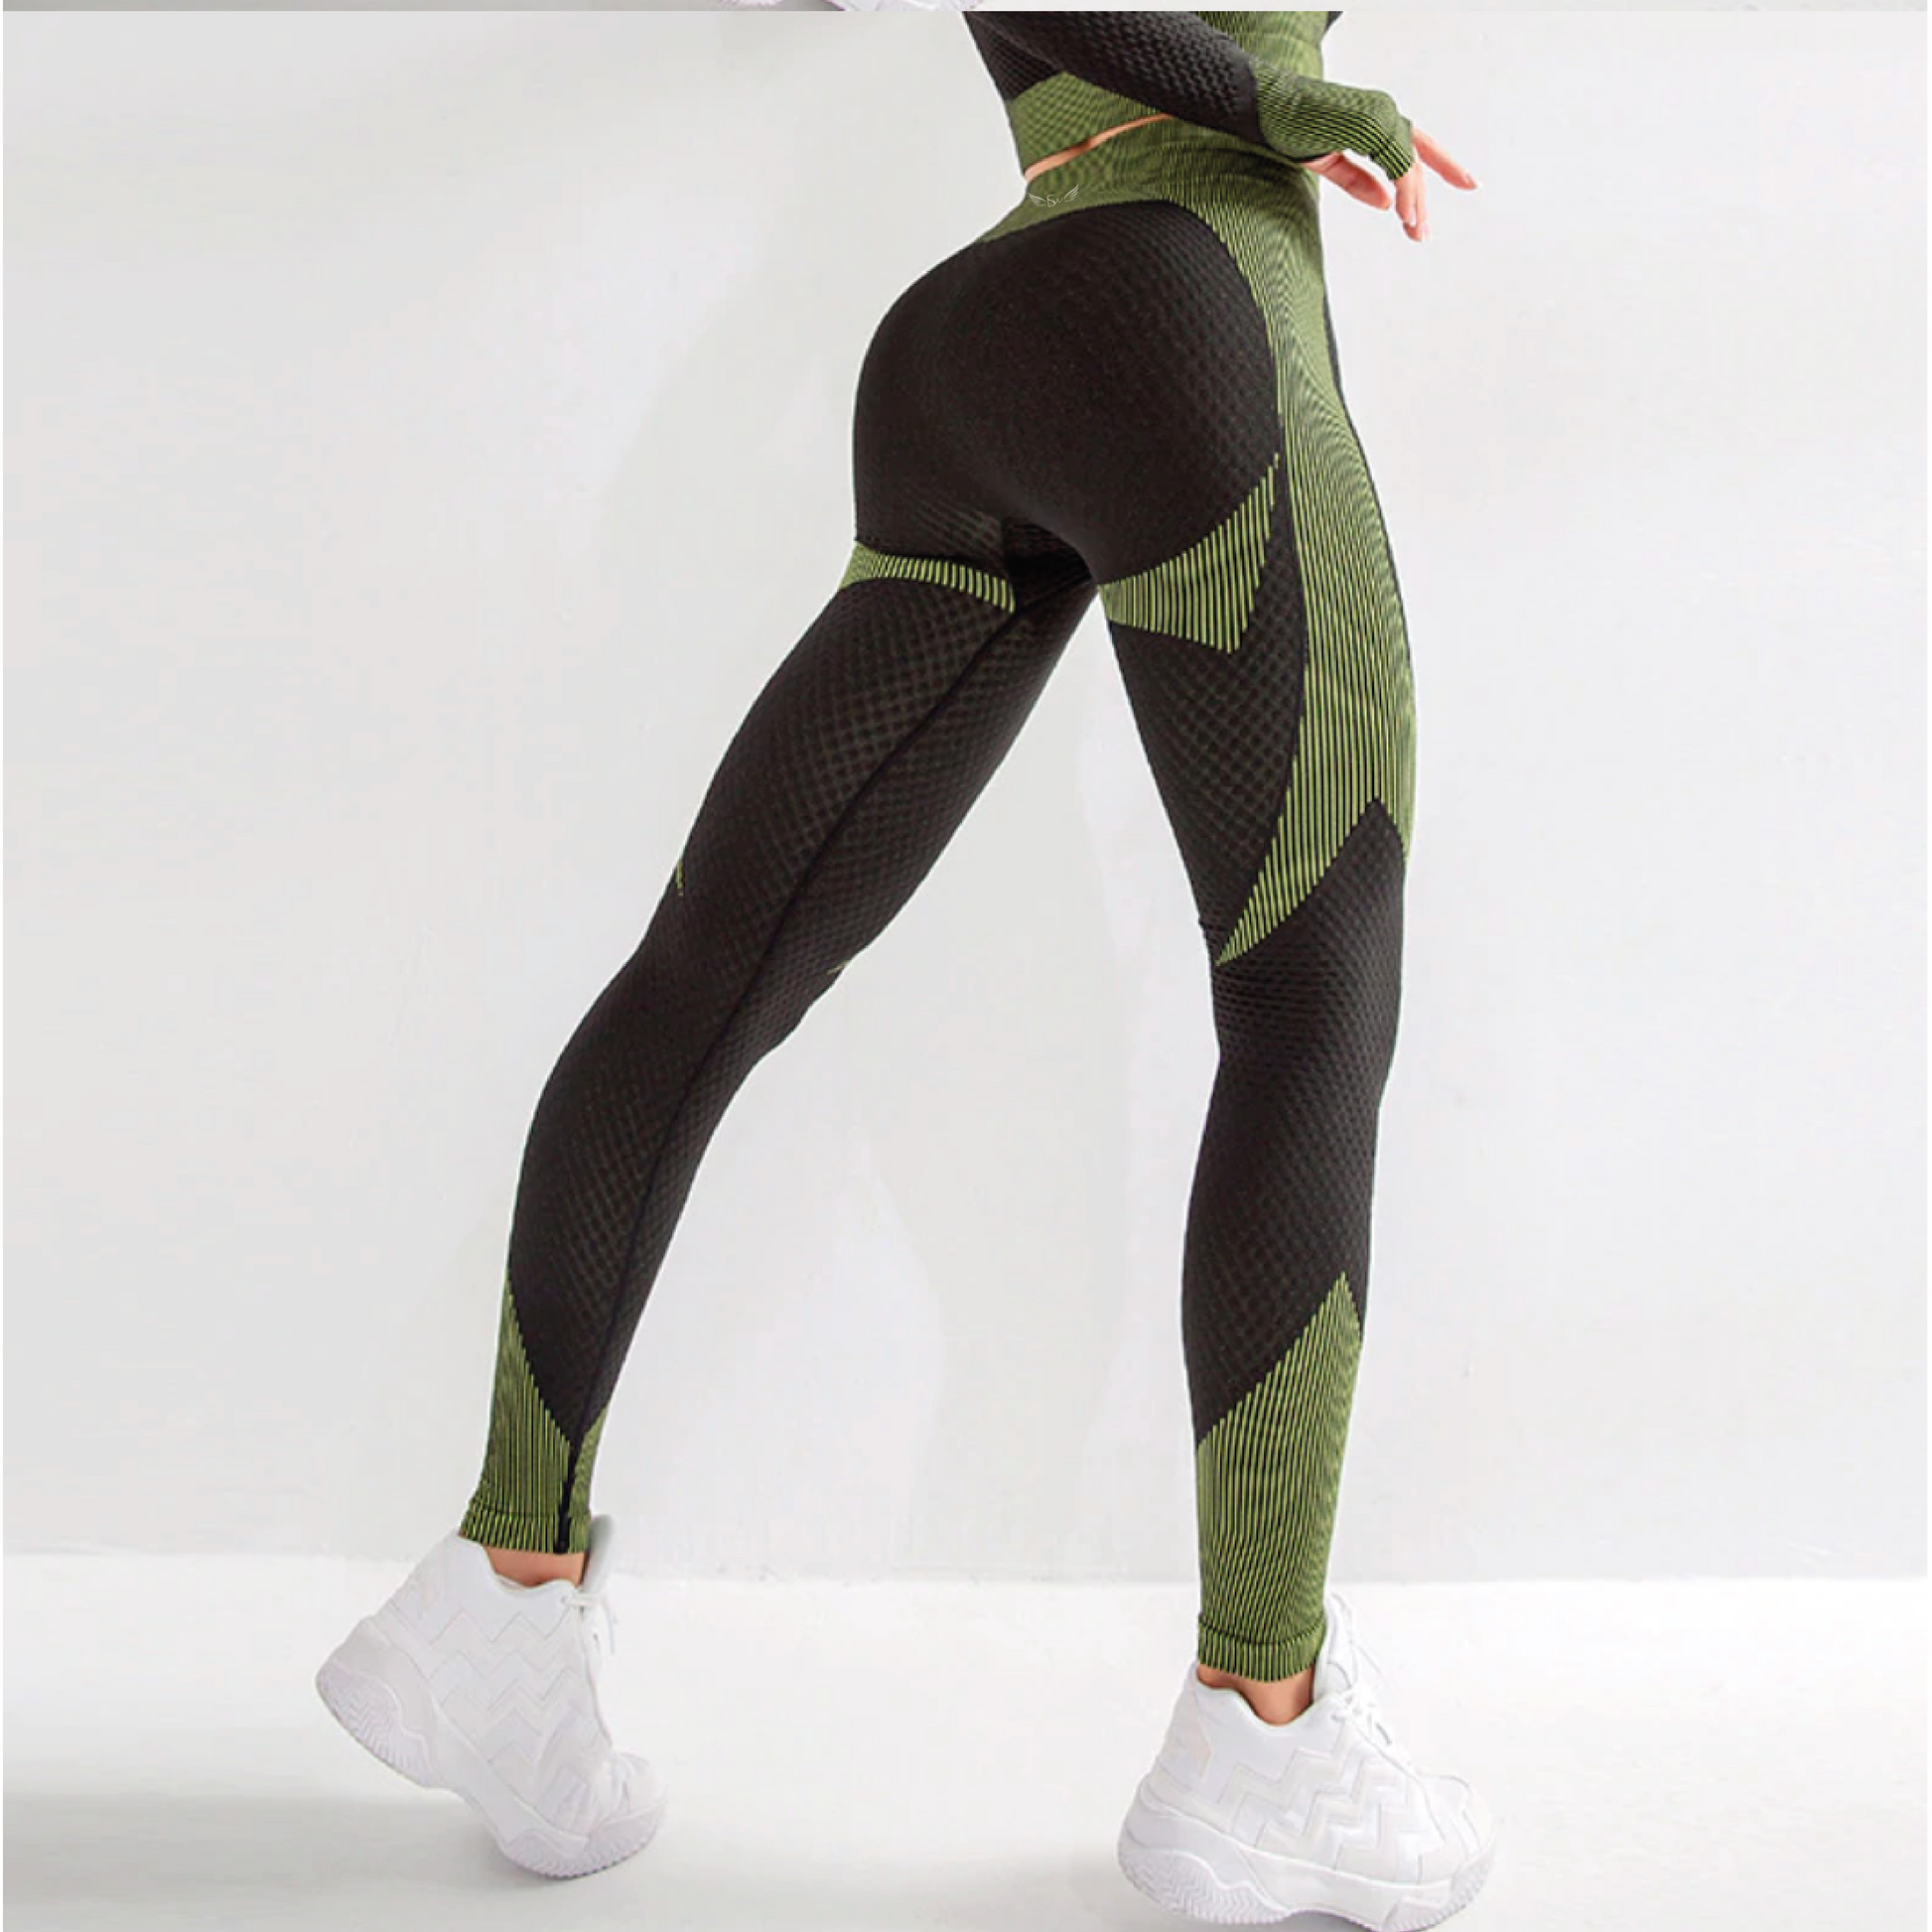 Cropped legging - Black green - Lola's sportswear